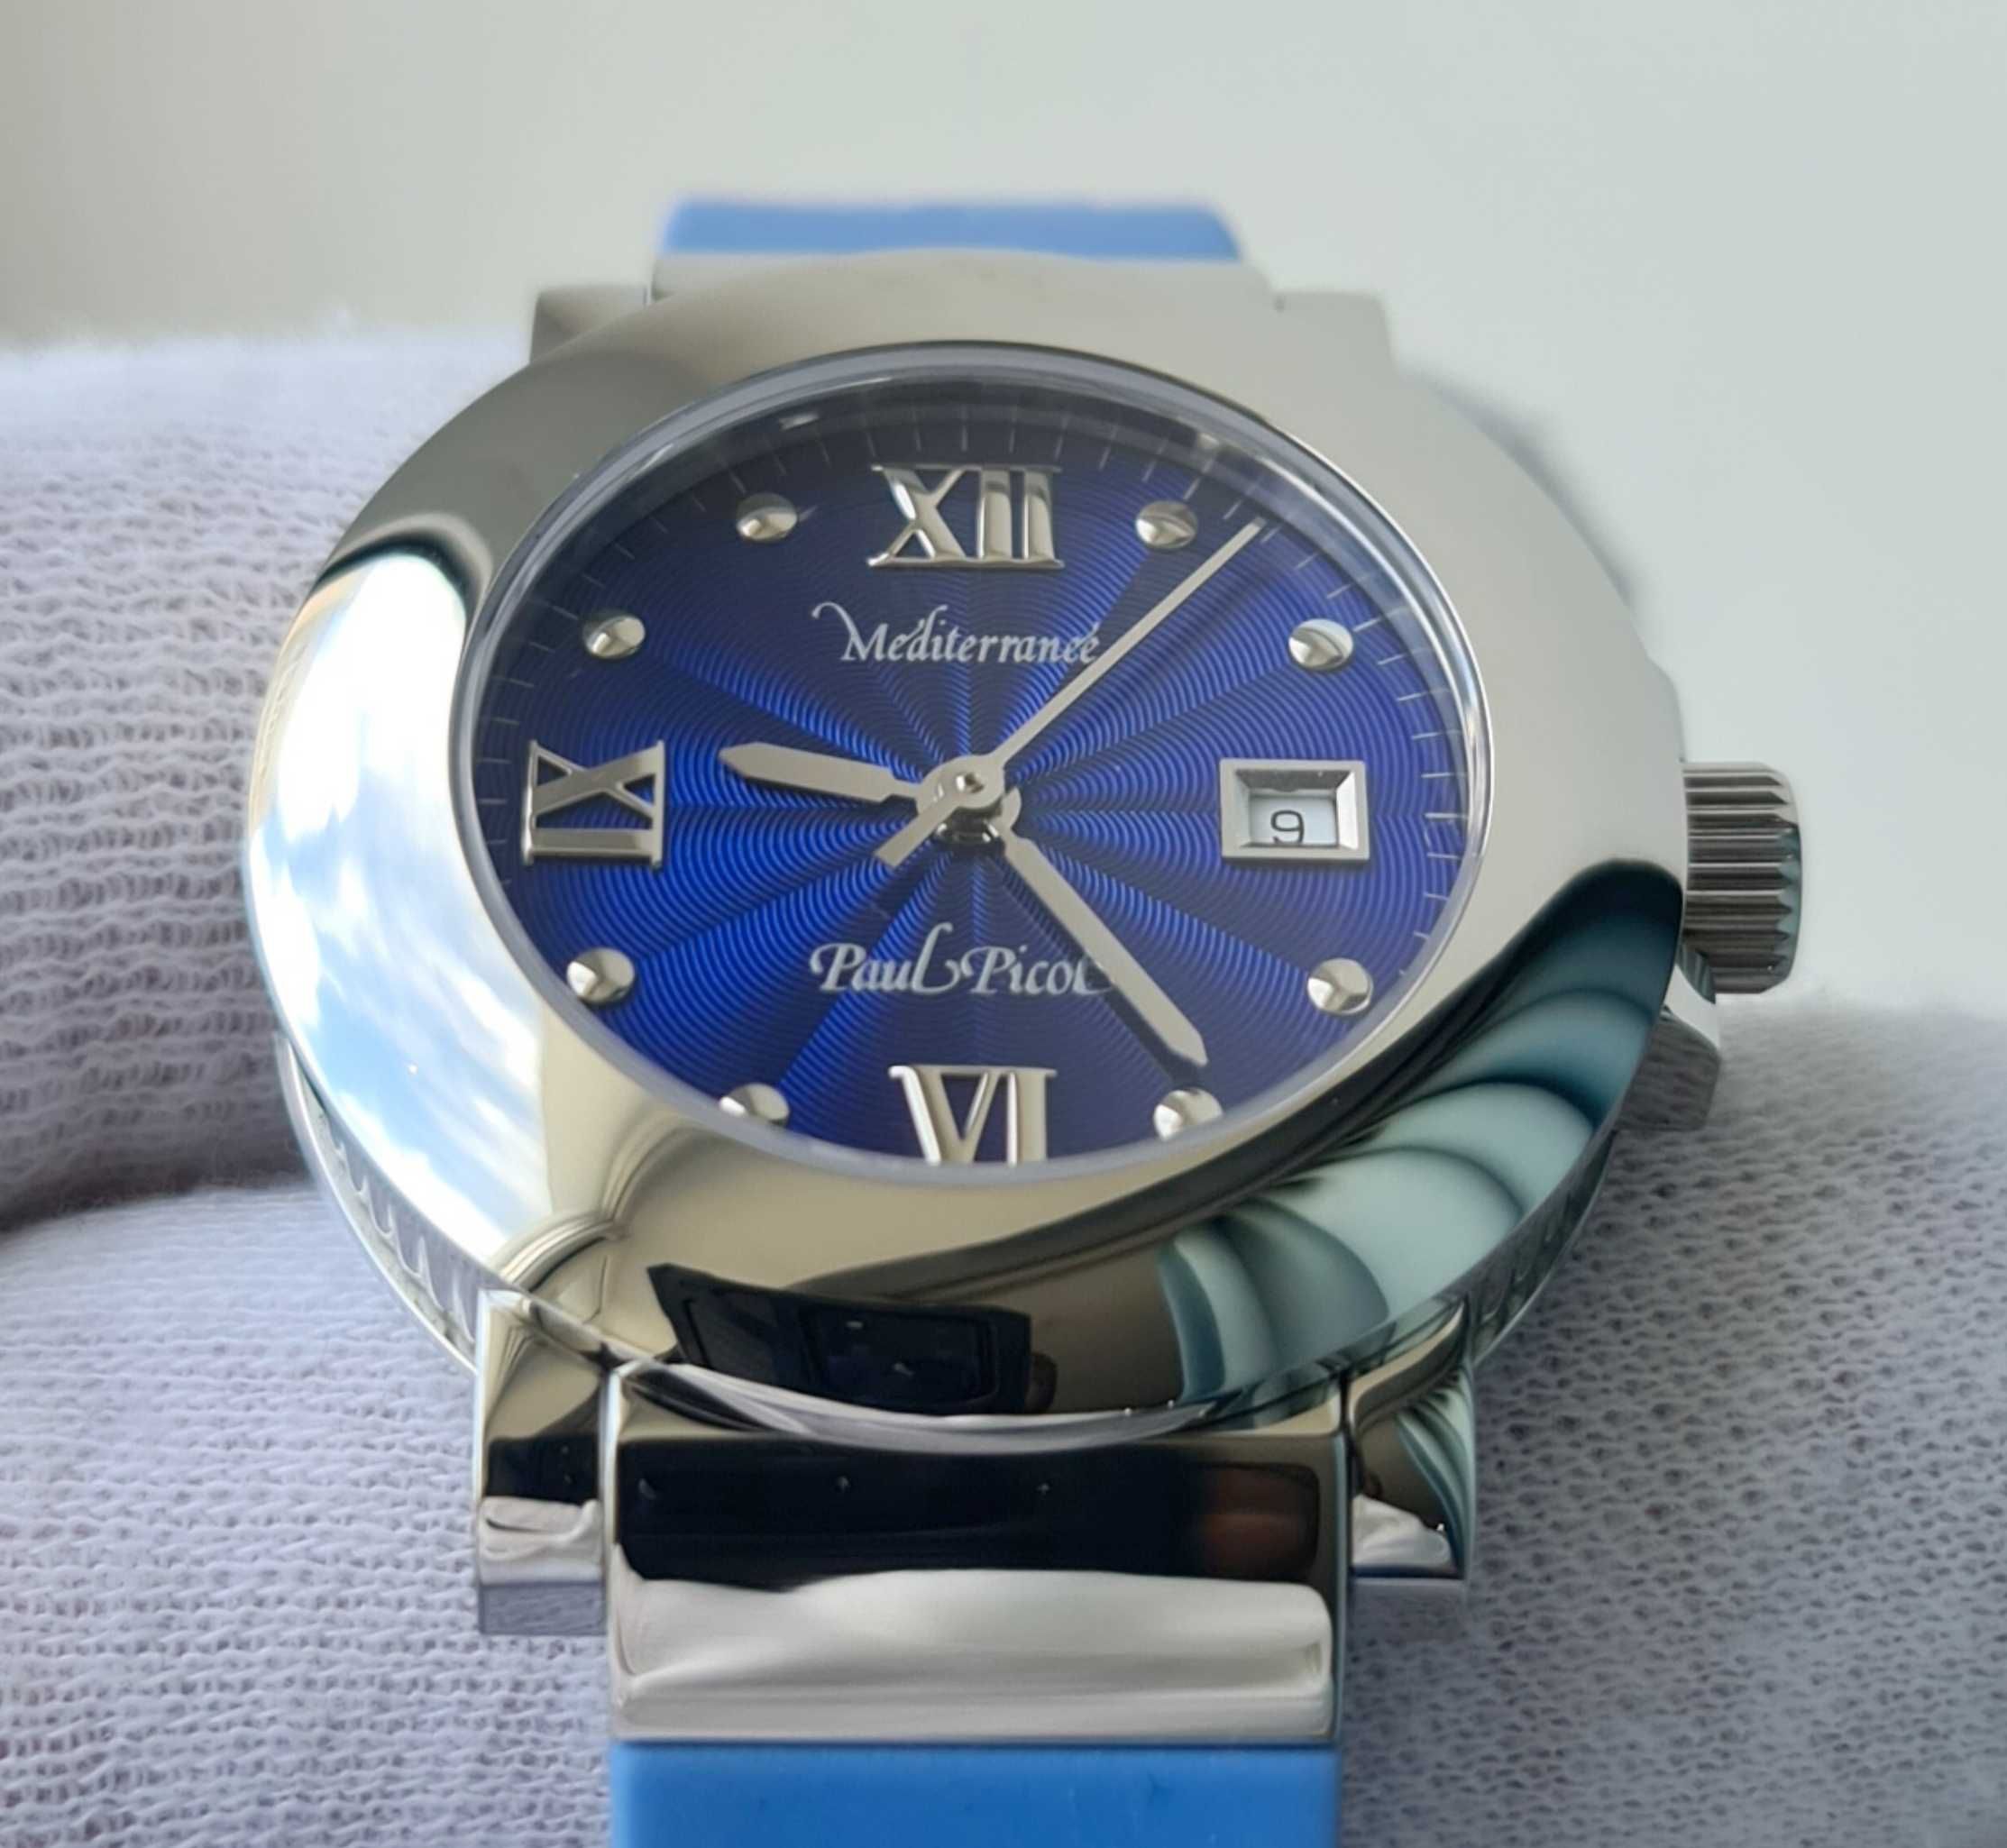 Жіночий годинник Paul Picot Mediterranee Blue Swiss Made нові